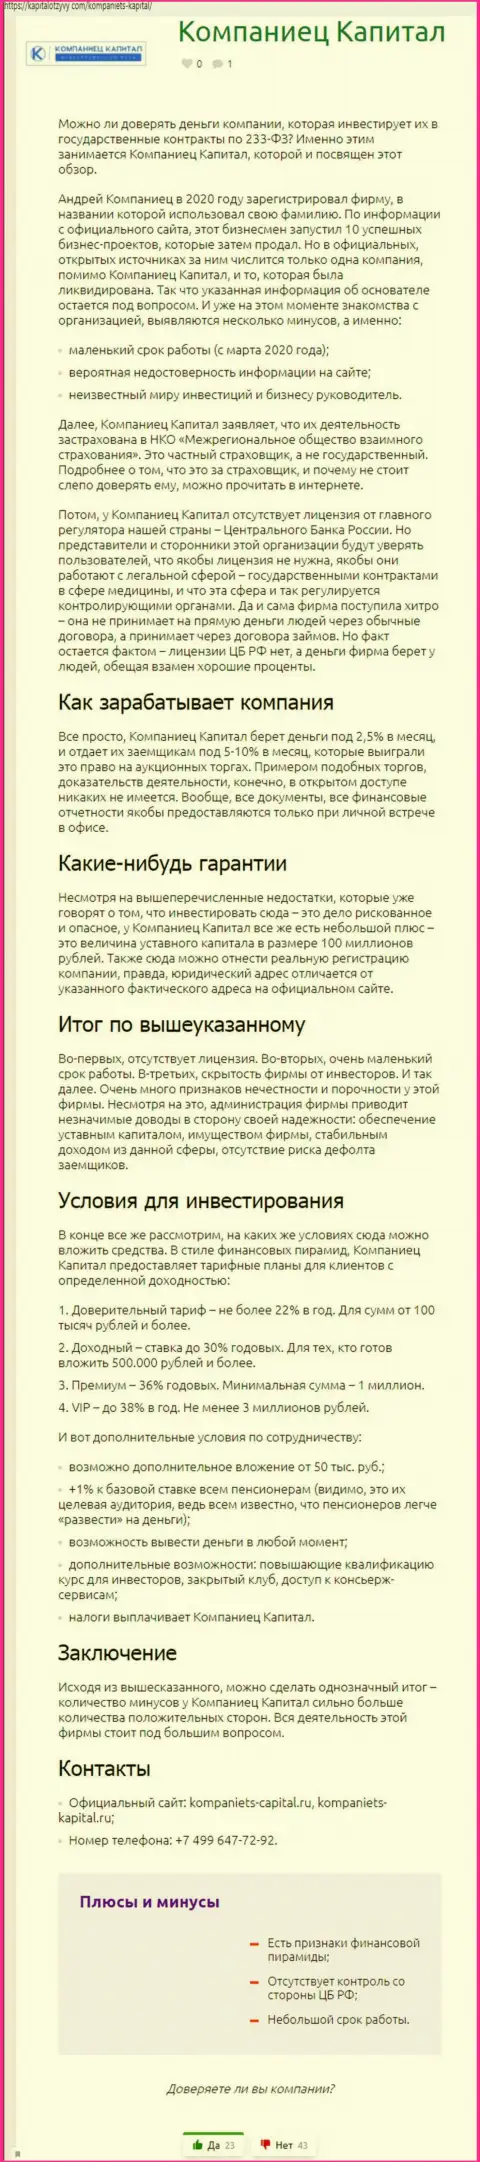 Автор публикации рекомендует не перечислять деньги в Kompaniets-Capital Ru - УВЕДУТ !!!